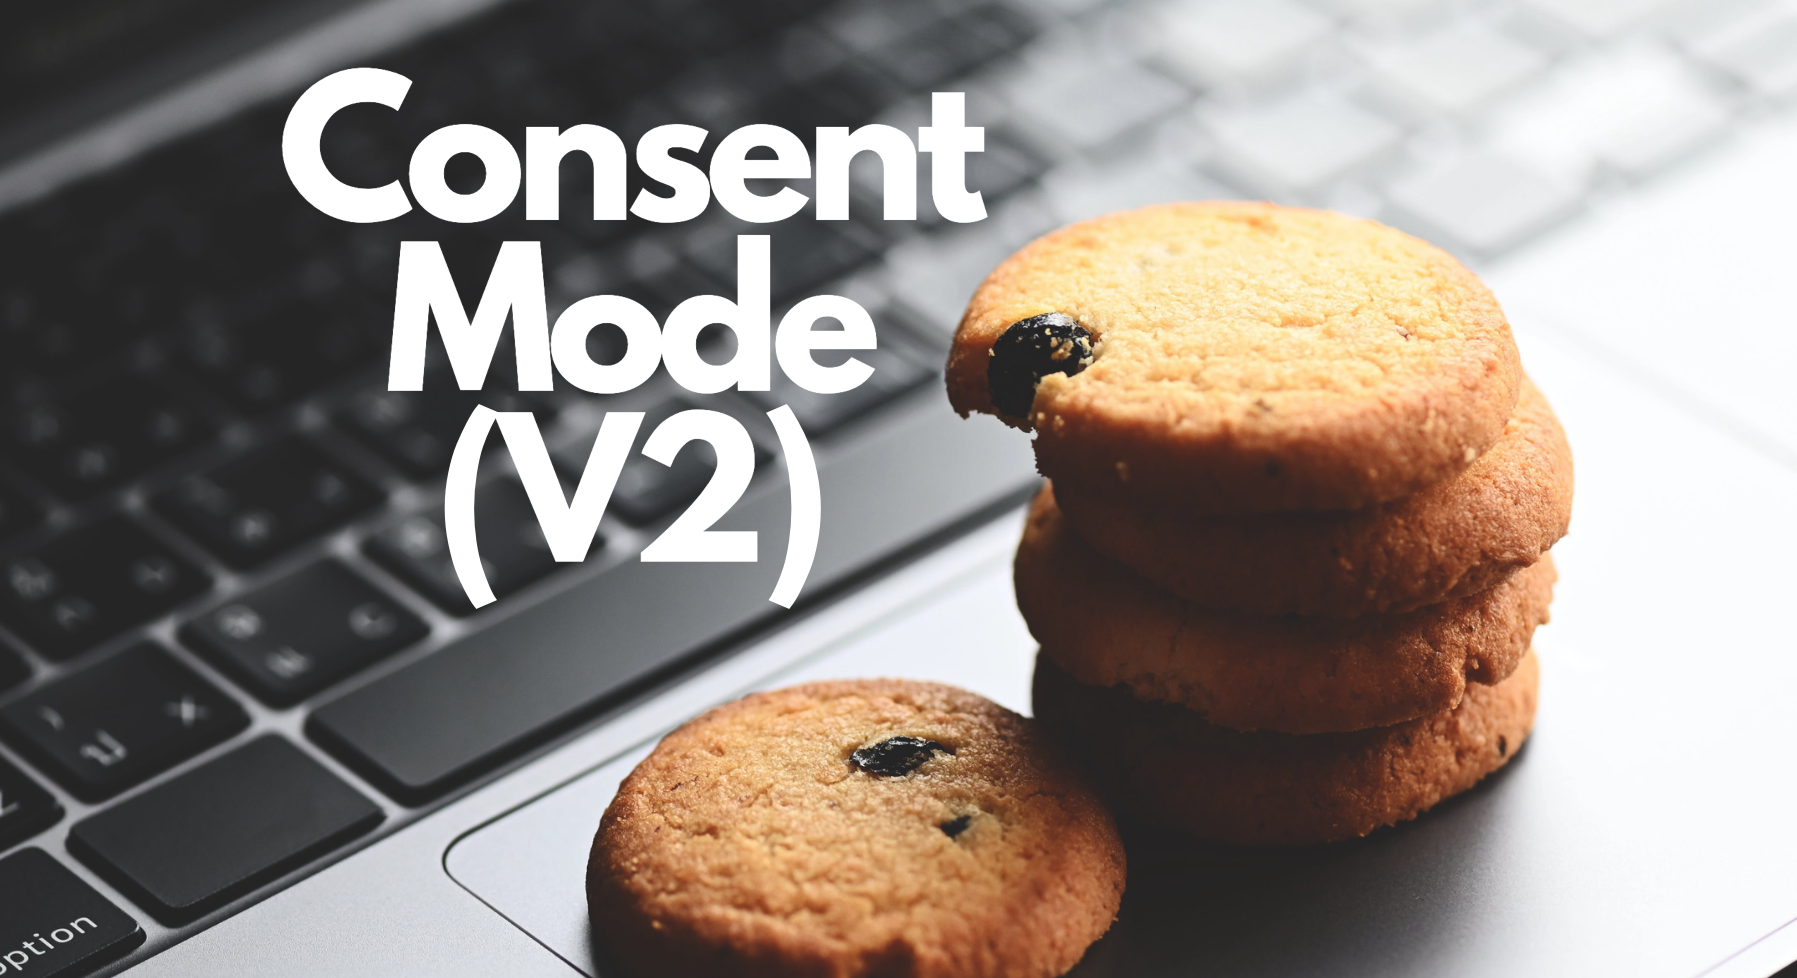 Consent Mode V2